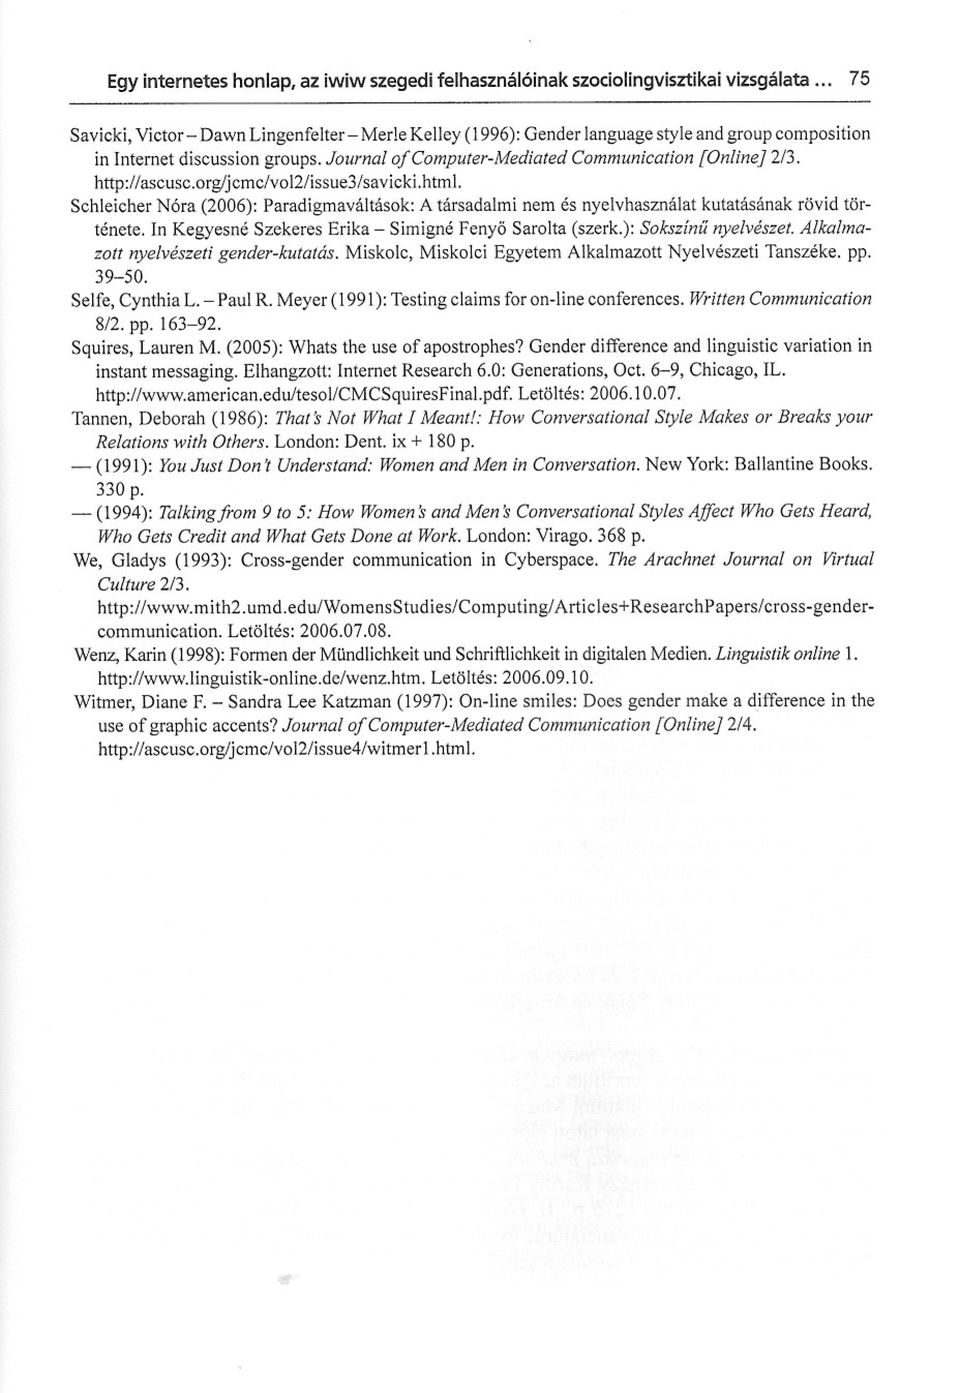 http://ascusc.orglj cmc/voi2/issue3/savicki.html. Schleicher Nóra (2006): Paradigmaváltások: A társadalmi nem és nyelvhasználat kutatásának rövid története.